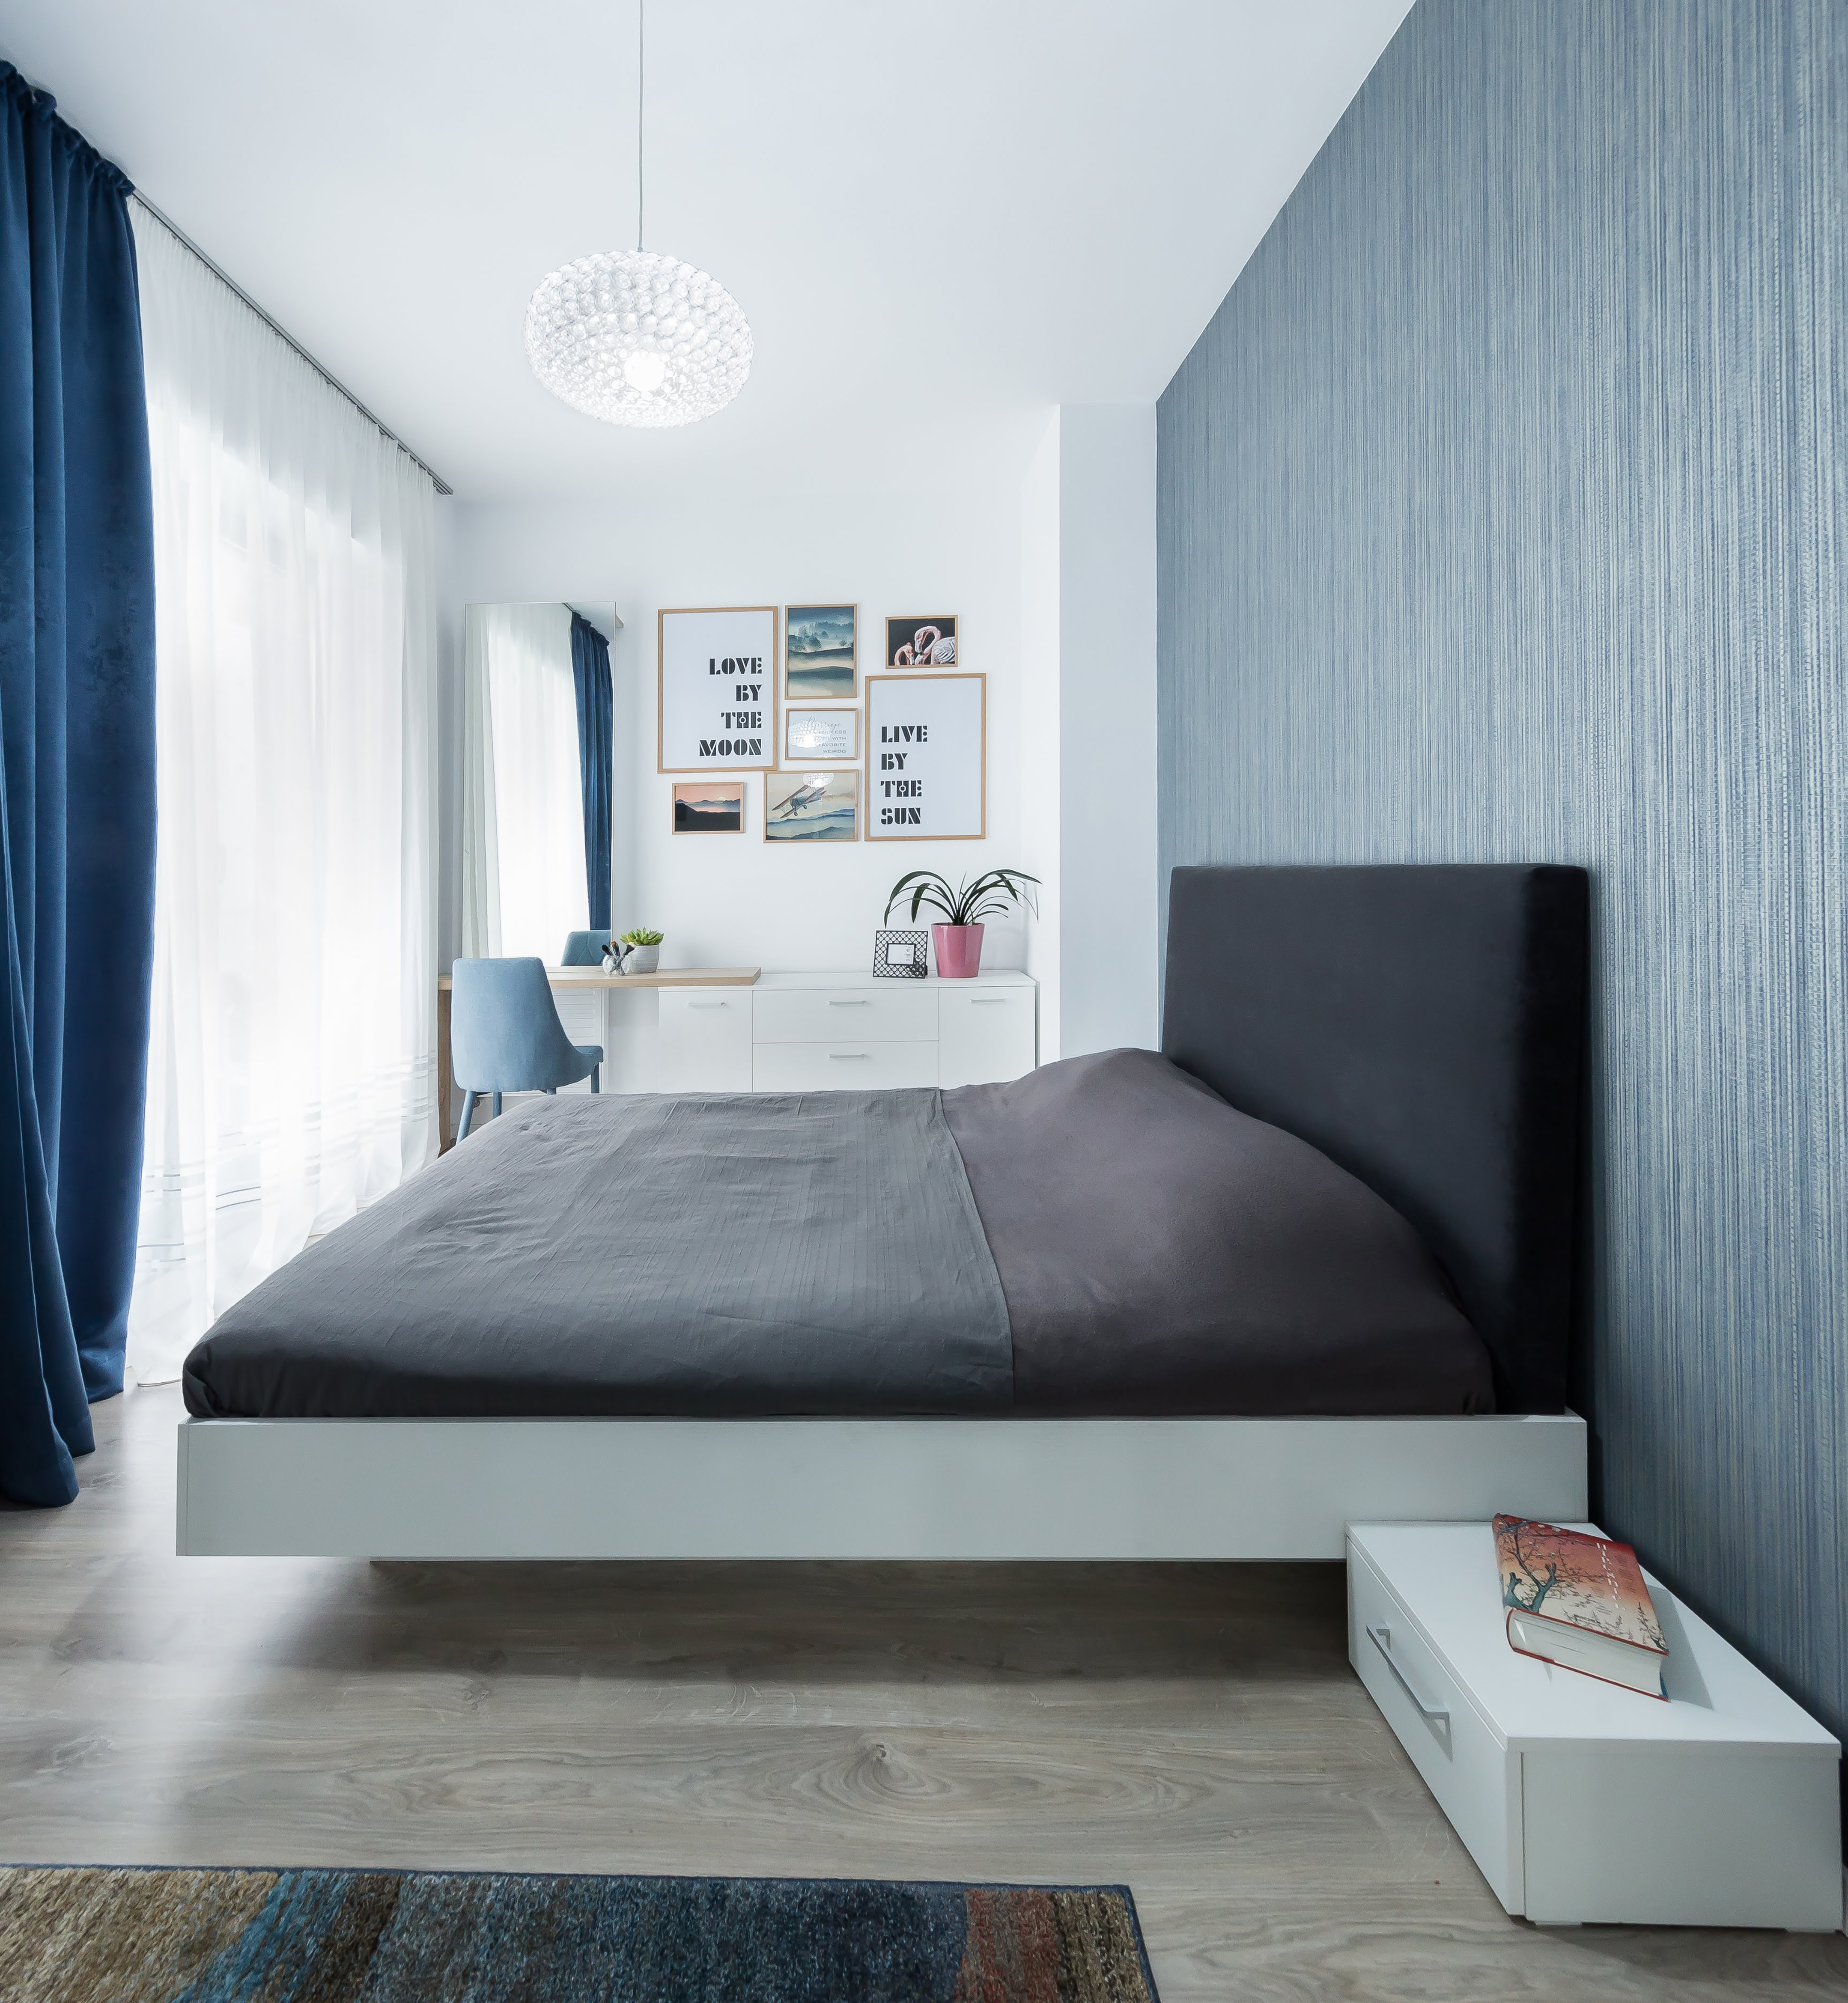 Le bleu subtil présent dans la chambre crée non seulement une ambiance apaisante, mais aussi un léger effet d'ombre. Bien qu'imposant, le lit offre un style élégant et intemporel grâce à sa teinte gris foncé très marquée.